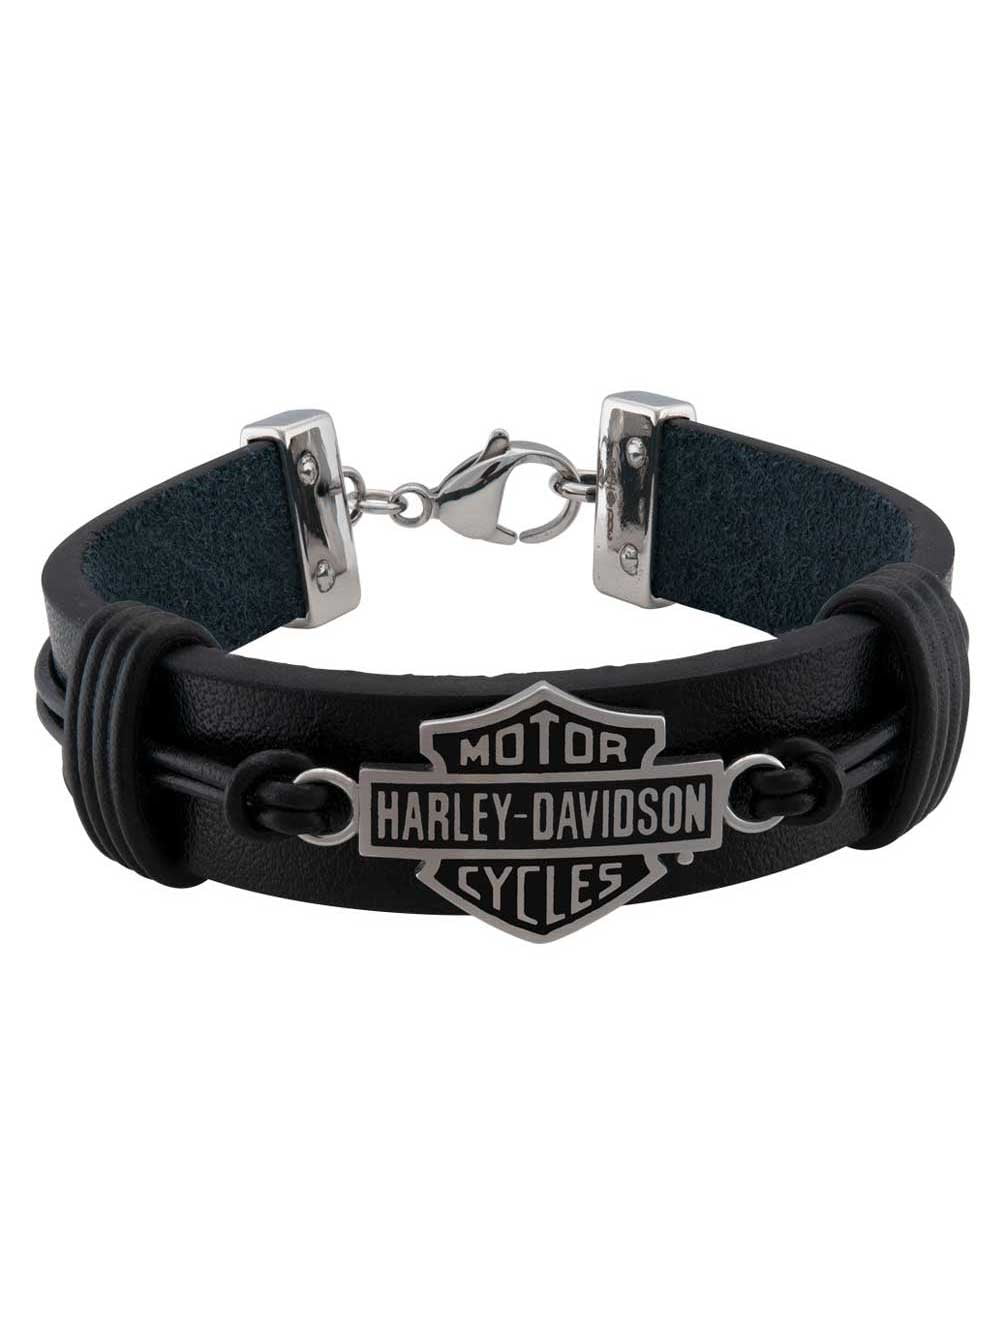 Harley-Davidson Stainless Steel Skull Ring | Harley davidson rings, Harley  davidson jewelry, Harley davidson merchandise